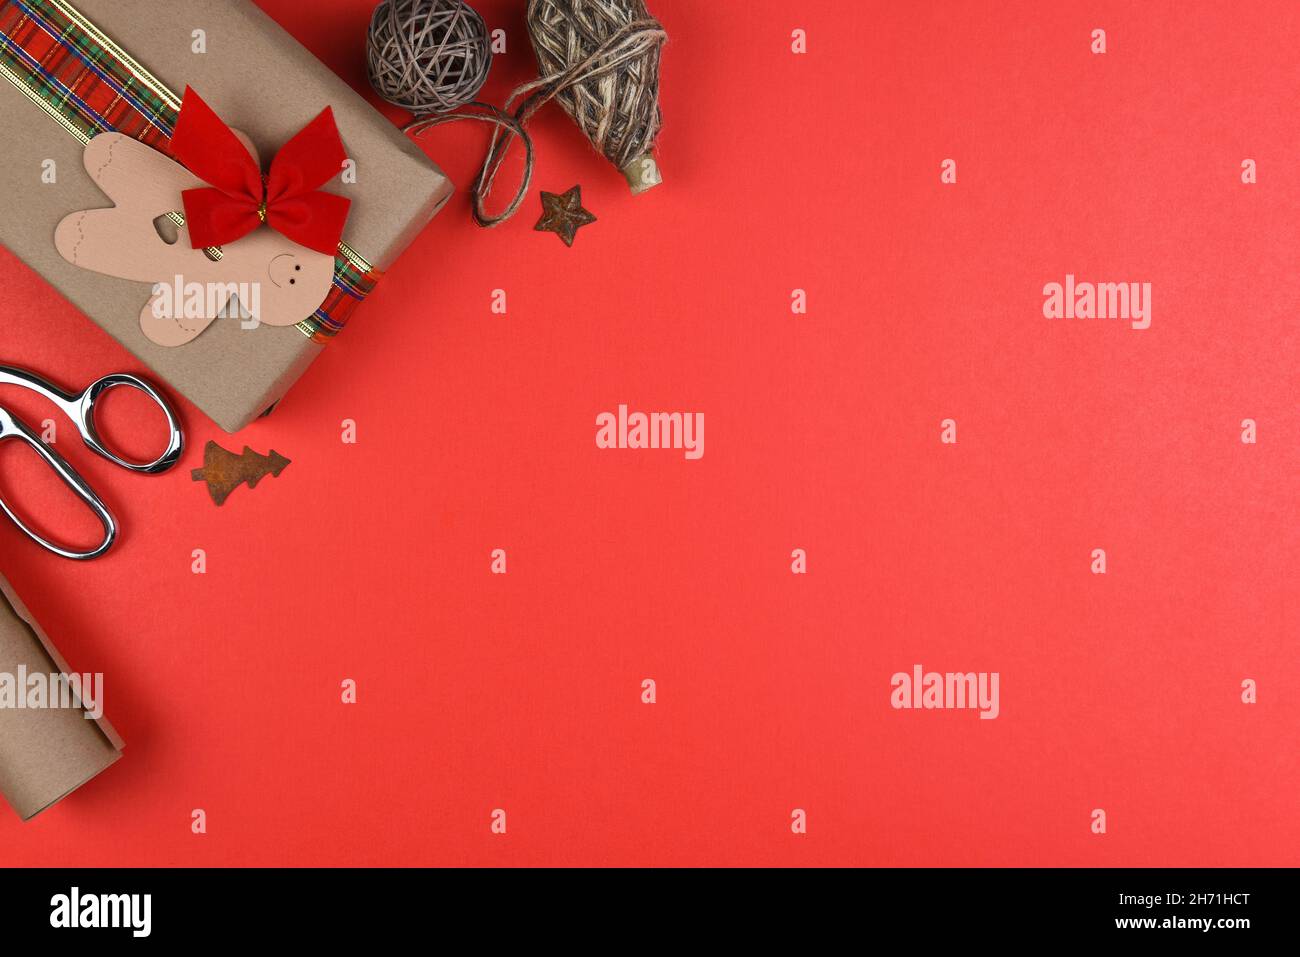 Noël appartement de vacances composition avec espace de copie sur le côté droit de rouge un fond et des objets entrant dans le cadre de la partie supérieure gauche cor Banque D'Images